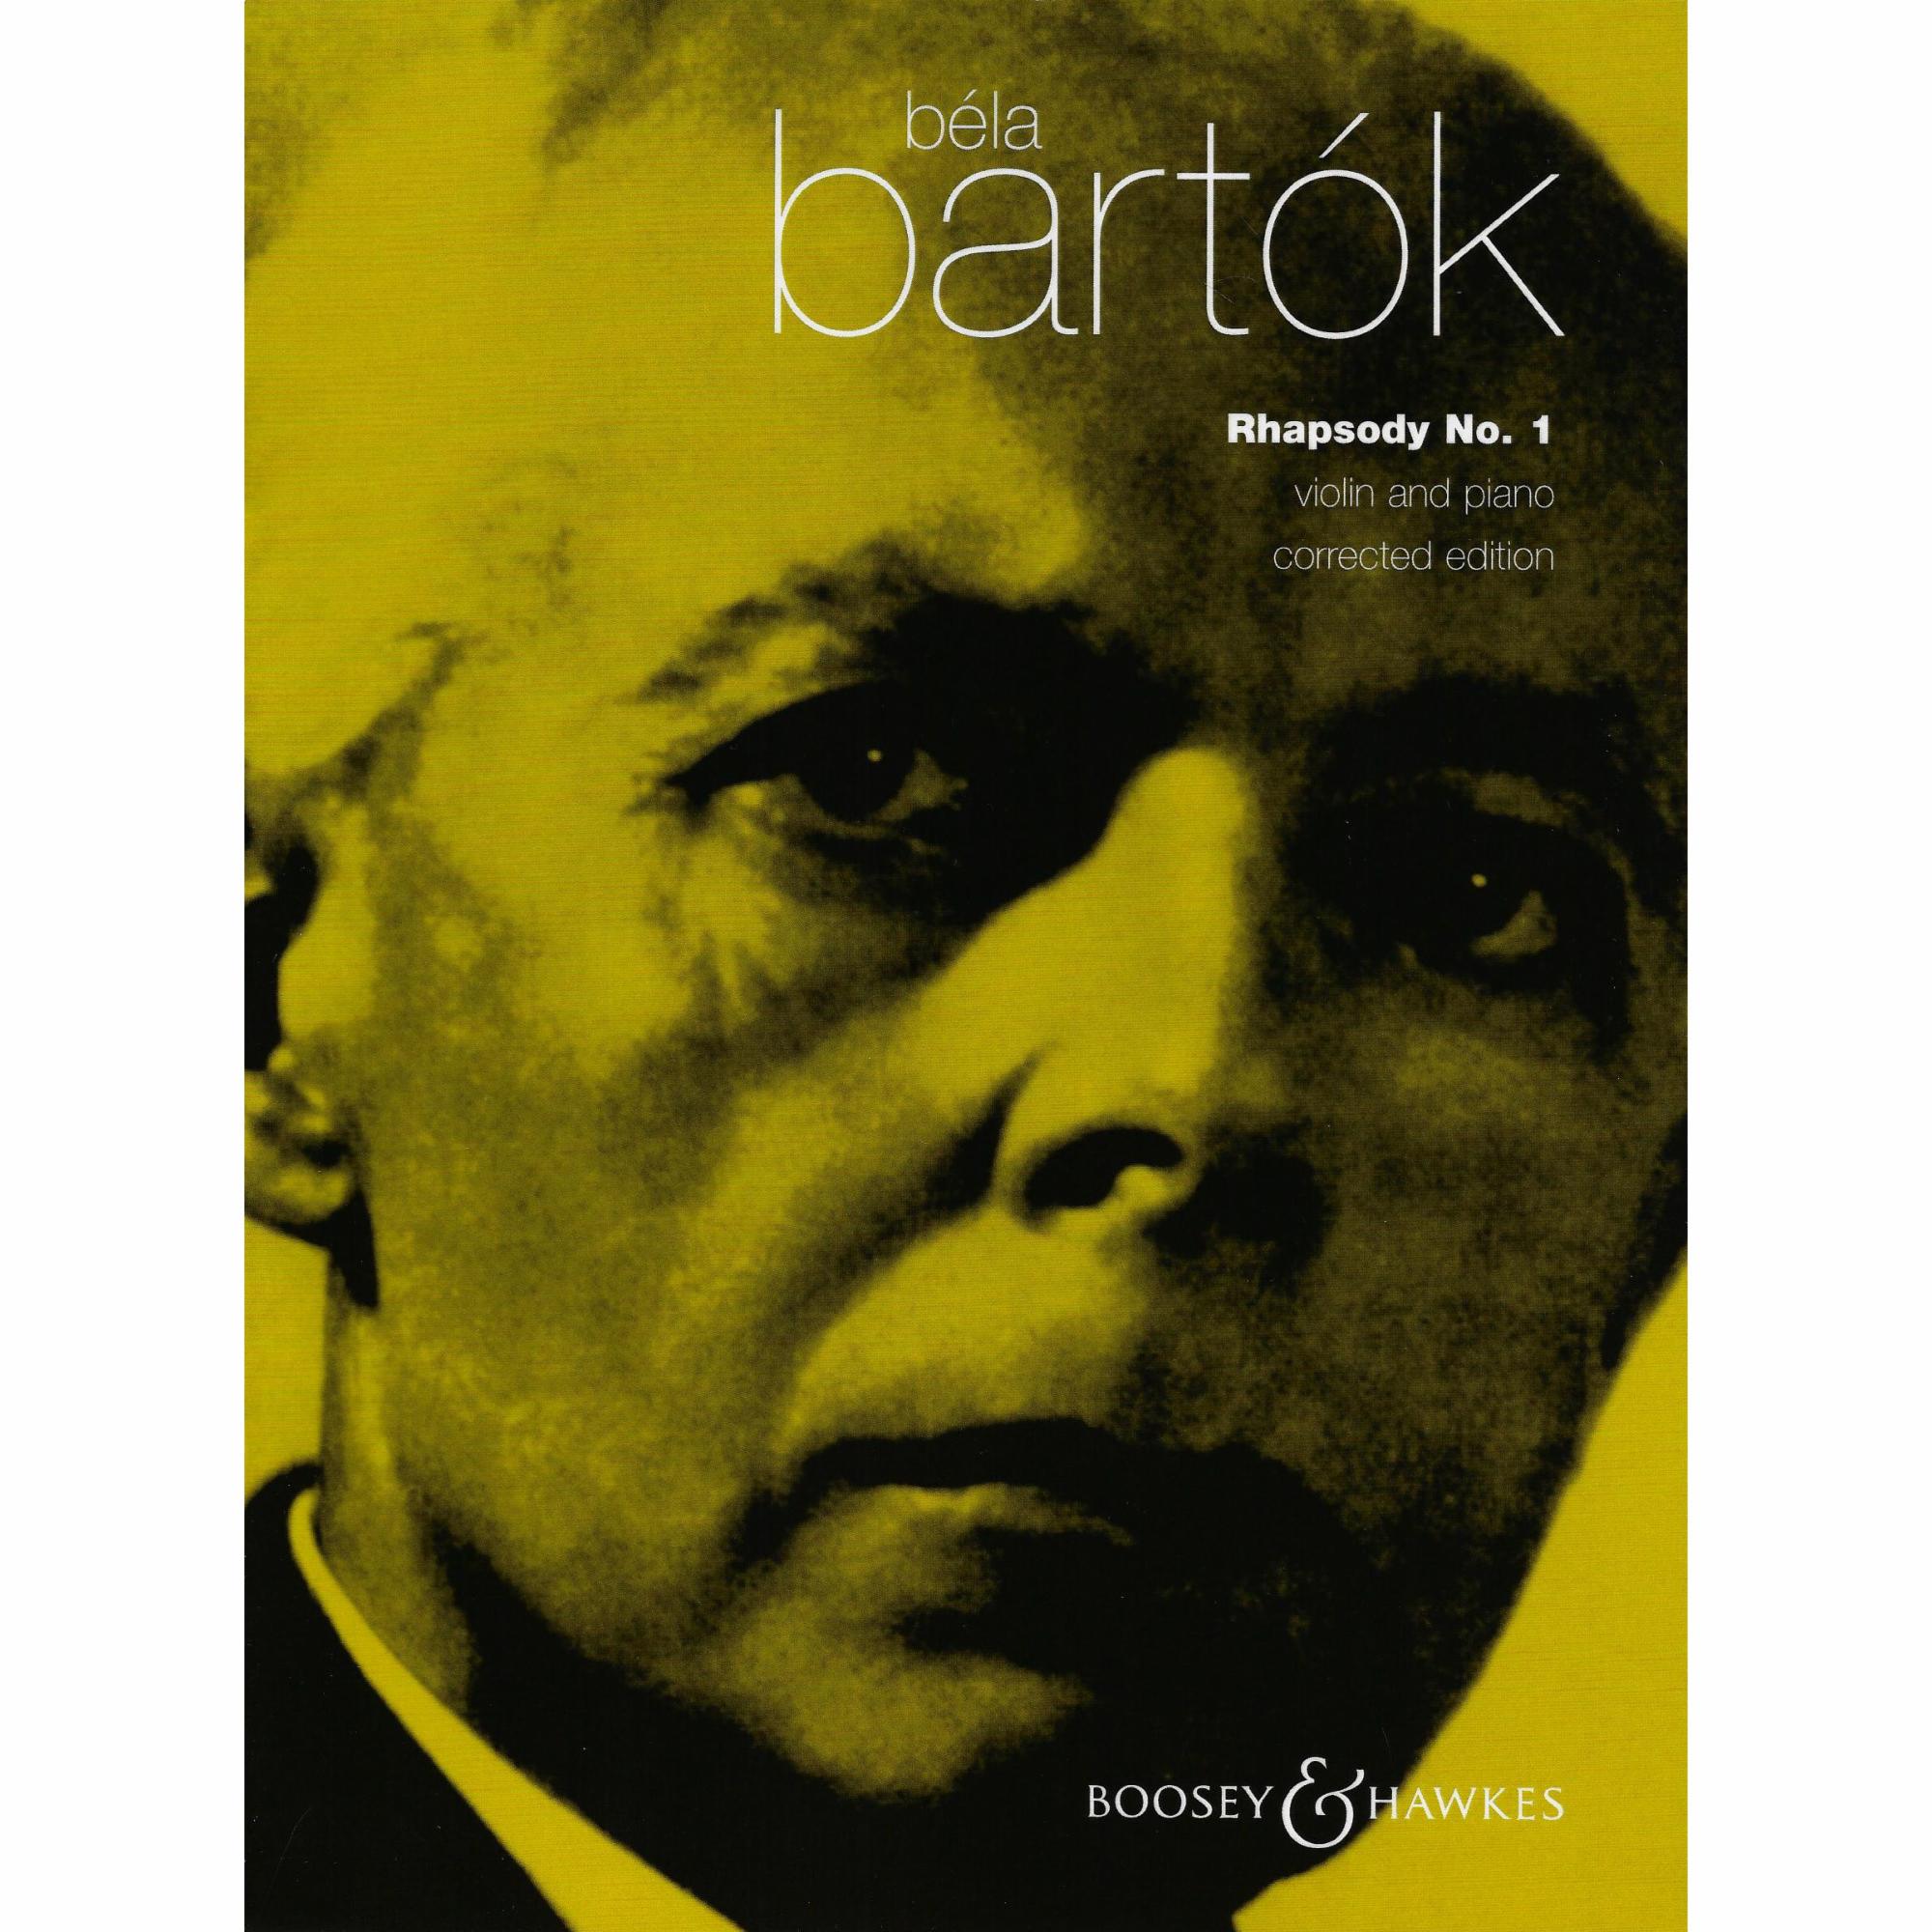 Bartok -- Rhapsody No. 1 for Violin and Piano